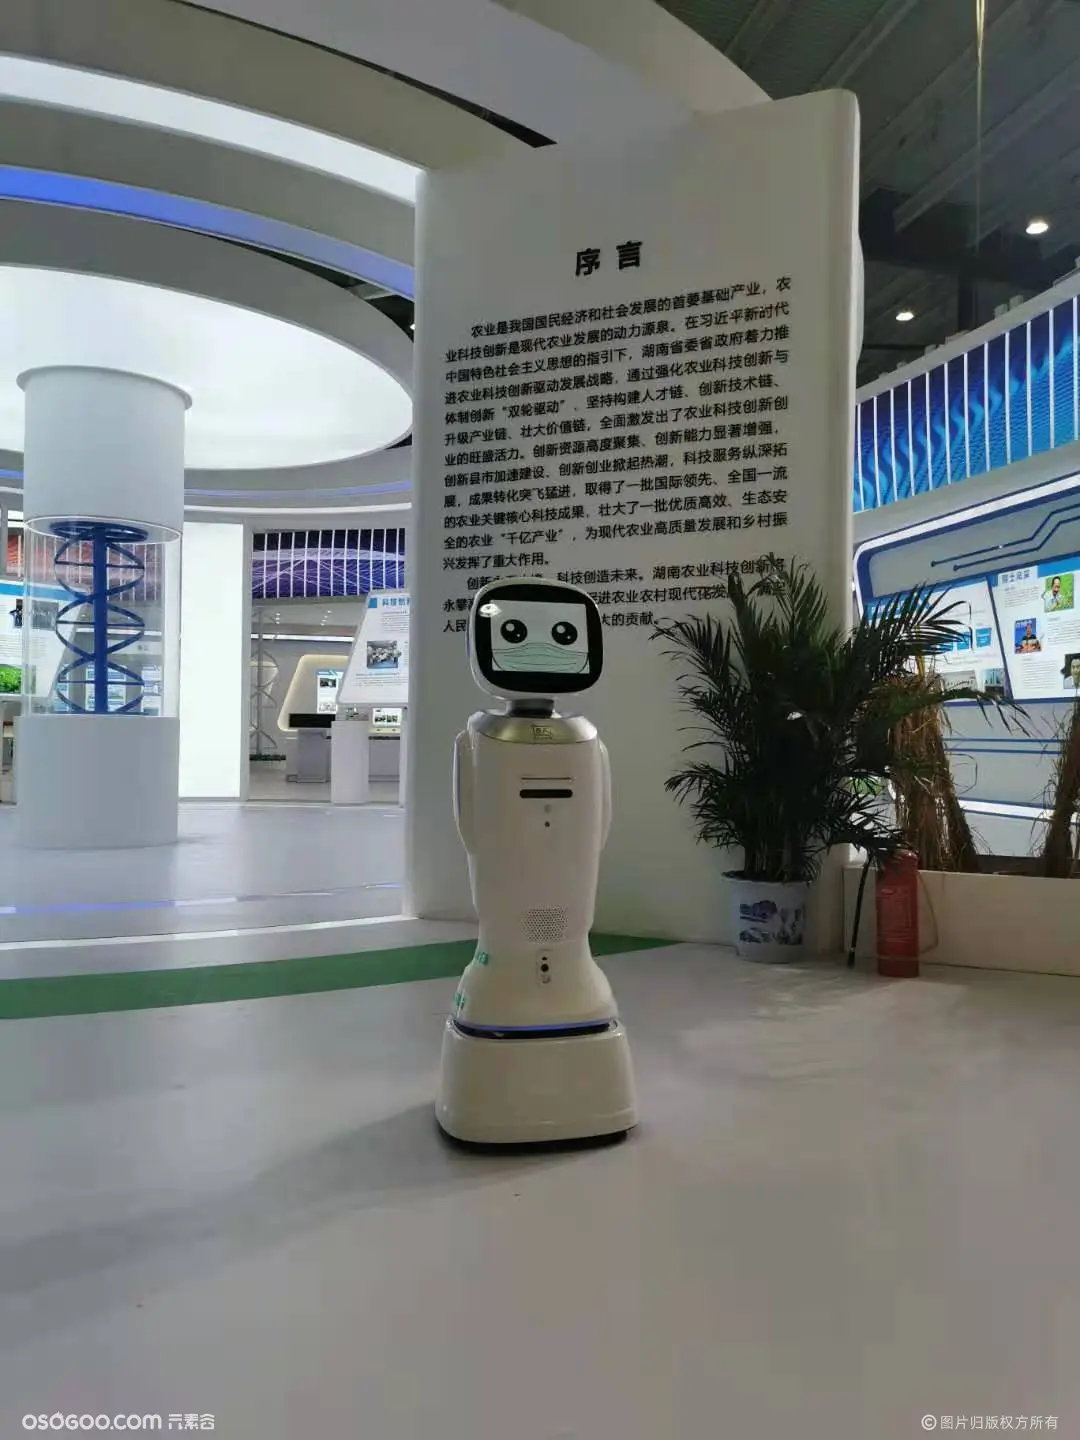 银行同款机器人 地产公司服务机器人 主持互动展厅讲解迎宾接待